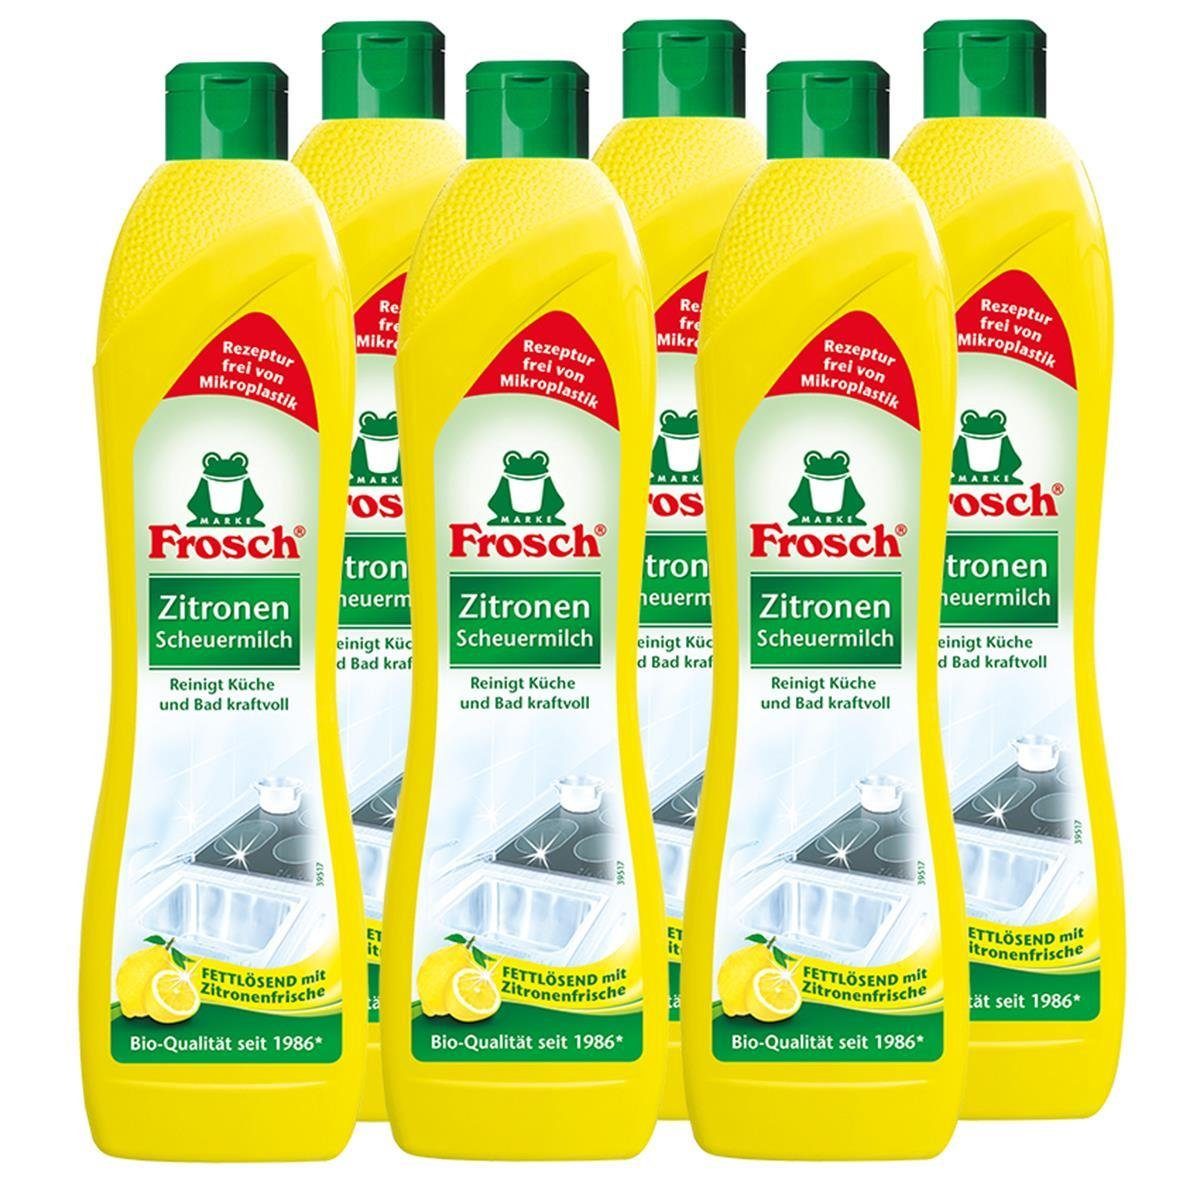 FROSCH 6x Frosch Zitronen Scheuermilch 500 ml - Reinigt Bad und Küche kraftvo Spezialwaschmittel | Waschmittel